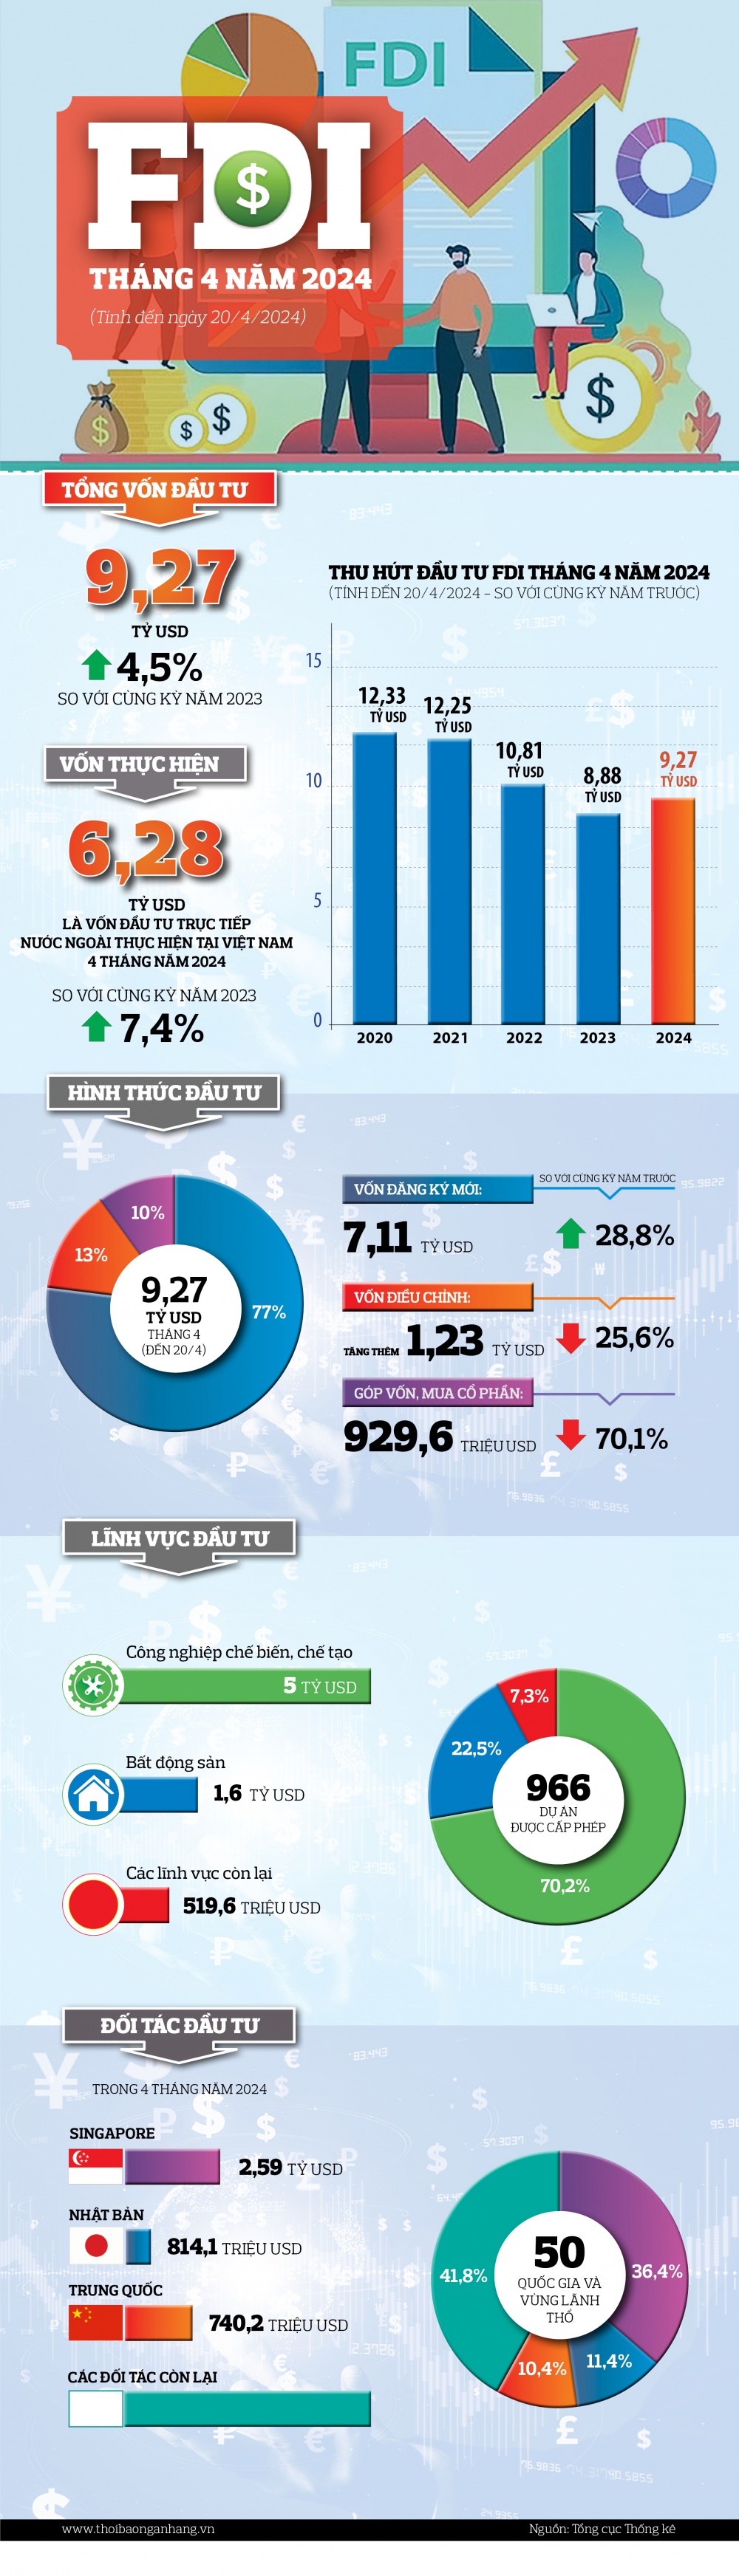 [Infographic] Tổng vốn đầu tư nước ngoài đăng ký vào Việt Nam tháng 4 năm 2024